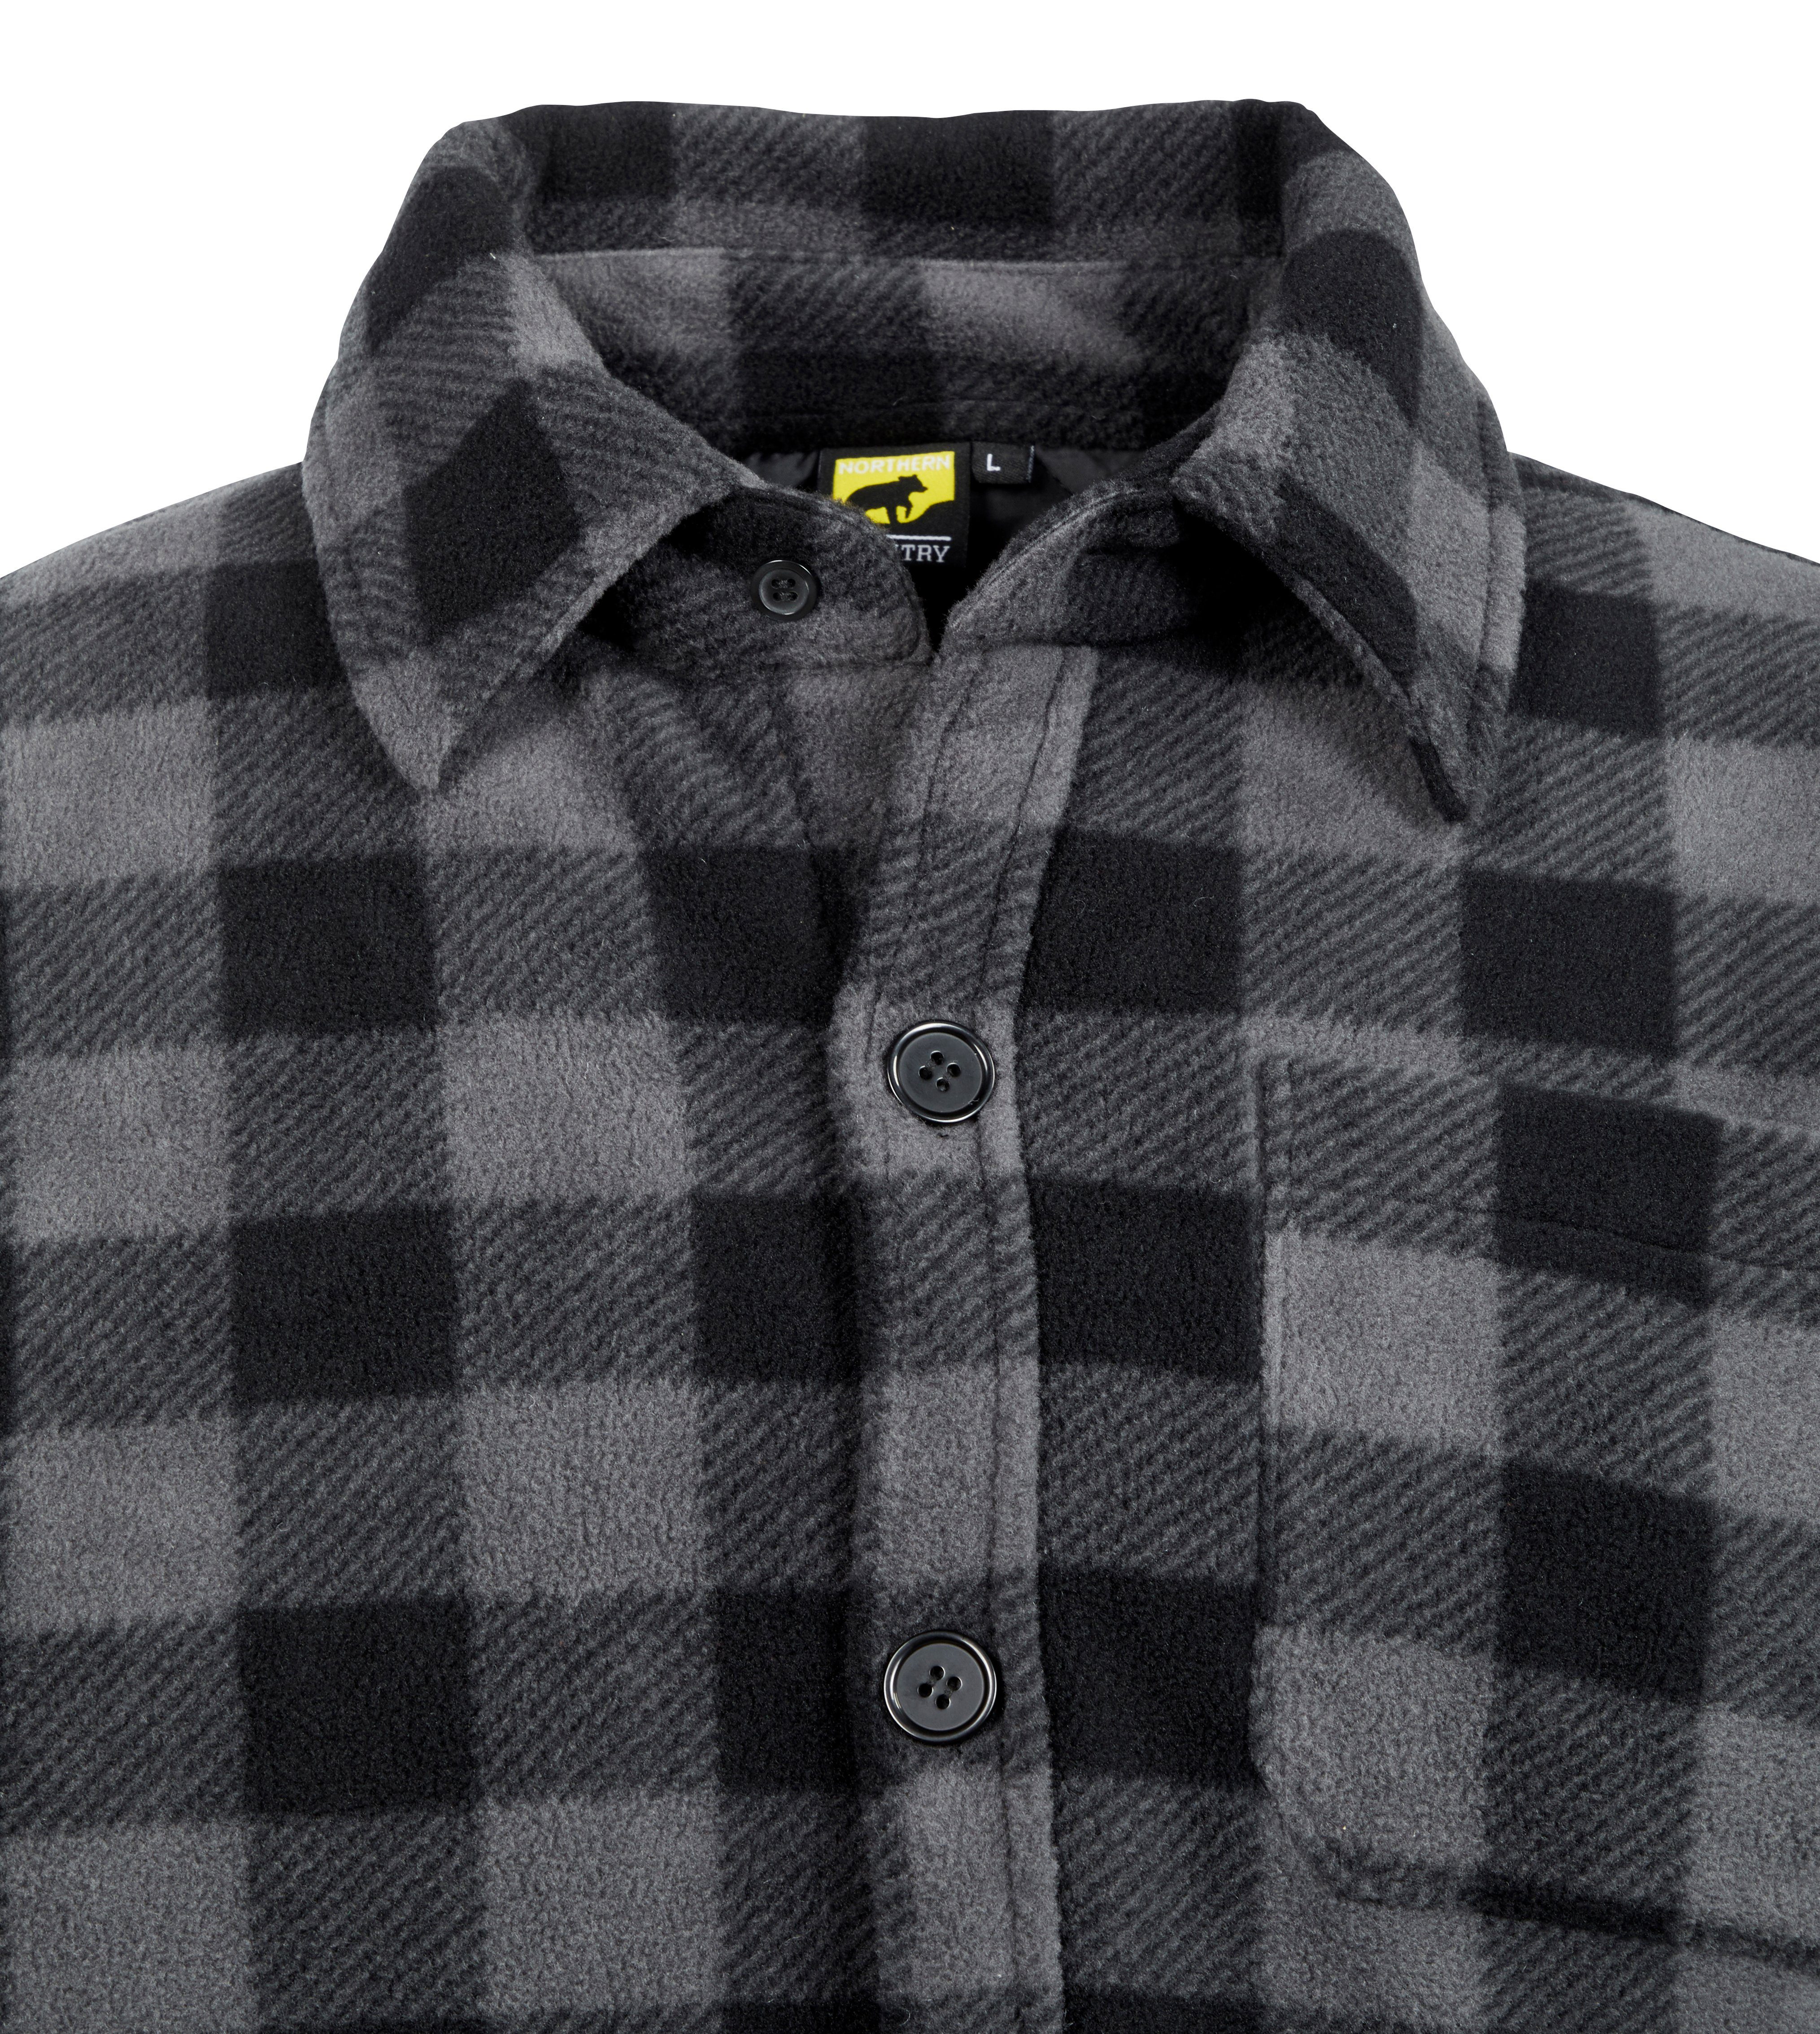 Northern Country Flanellhemd warm 5 verlängertem Flanellstoff Jacke zugeknöpft Rücken, Hemd Taschen, tragen) offen zu oder (als mit grau-schwarz gefüttert, mit